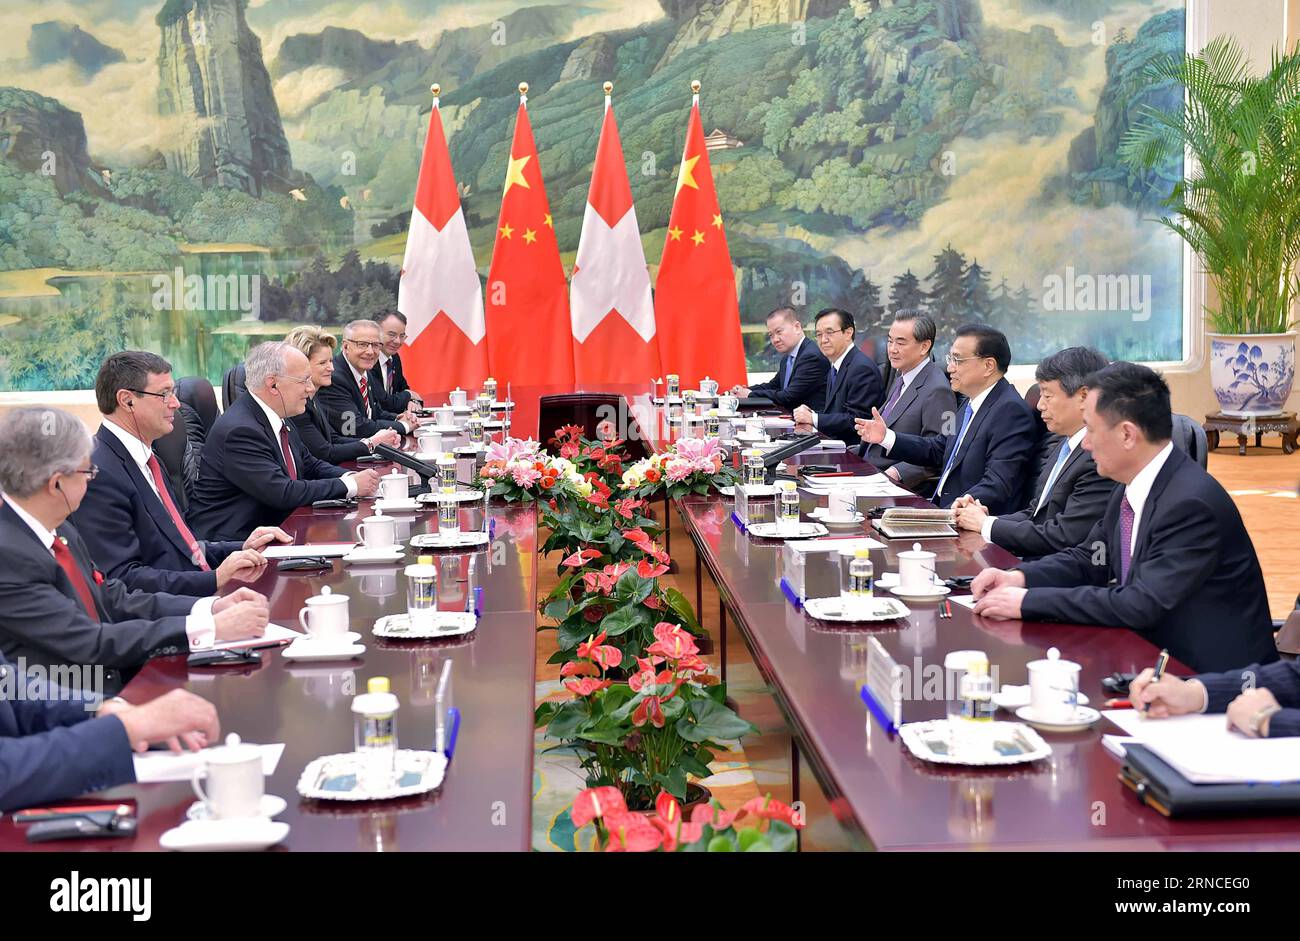 (160407) -- BEIJING, April 7, 2016 -- Chinese Premier Li Keqiang meets with Swiss President Johann Schneider-Ammann in Beijing, China, April 7, 2016. ) (zhs) CHINA-SWITZERLAND-LI KEQIANG-SCHNEIDER-AMMANN-MEET (CN) LixTao PUBLICATIONxNOTxINxCHN   160407 Beijing April 7 2016 Chinese Premier left Keqiang Meets With Swiss President Johann Schneider Ammann in Beijing China April 7 2016 zhs China Switzerland left Keqiang Schneider Ammann Meet CN LixTao PUBLICATIONxNOTxINxCHN Stock Photo